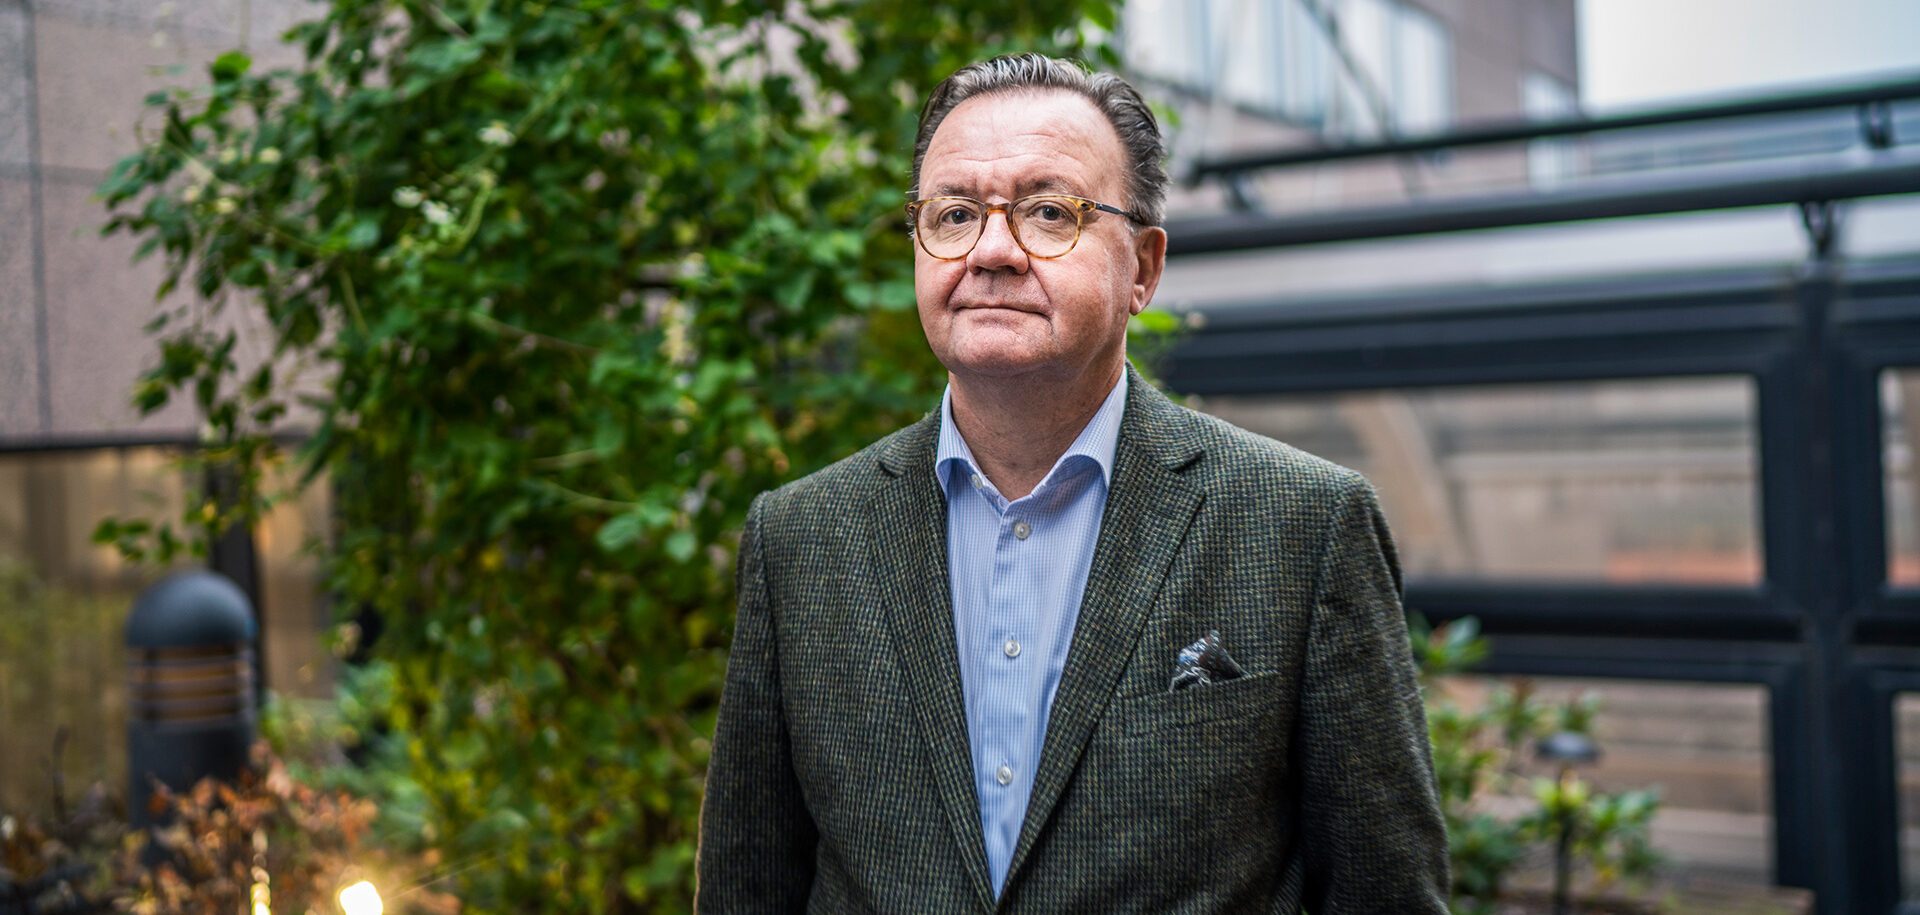 Karl-Henrik Sundström, dal 2014 CEO del gruppo finnico-svedese Stora Enso, che opera nell’industria forestale, nel settore cellulosa e carta.